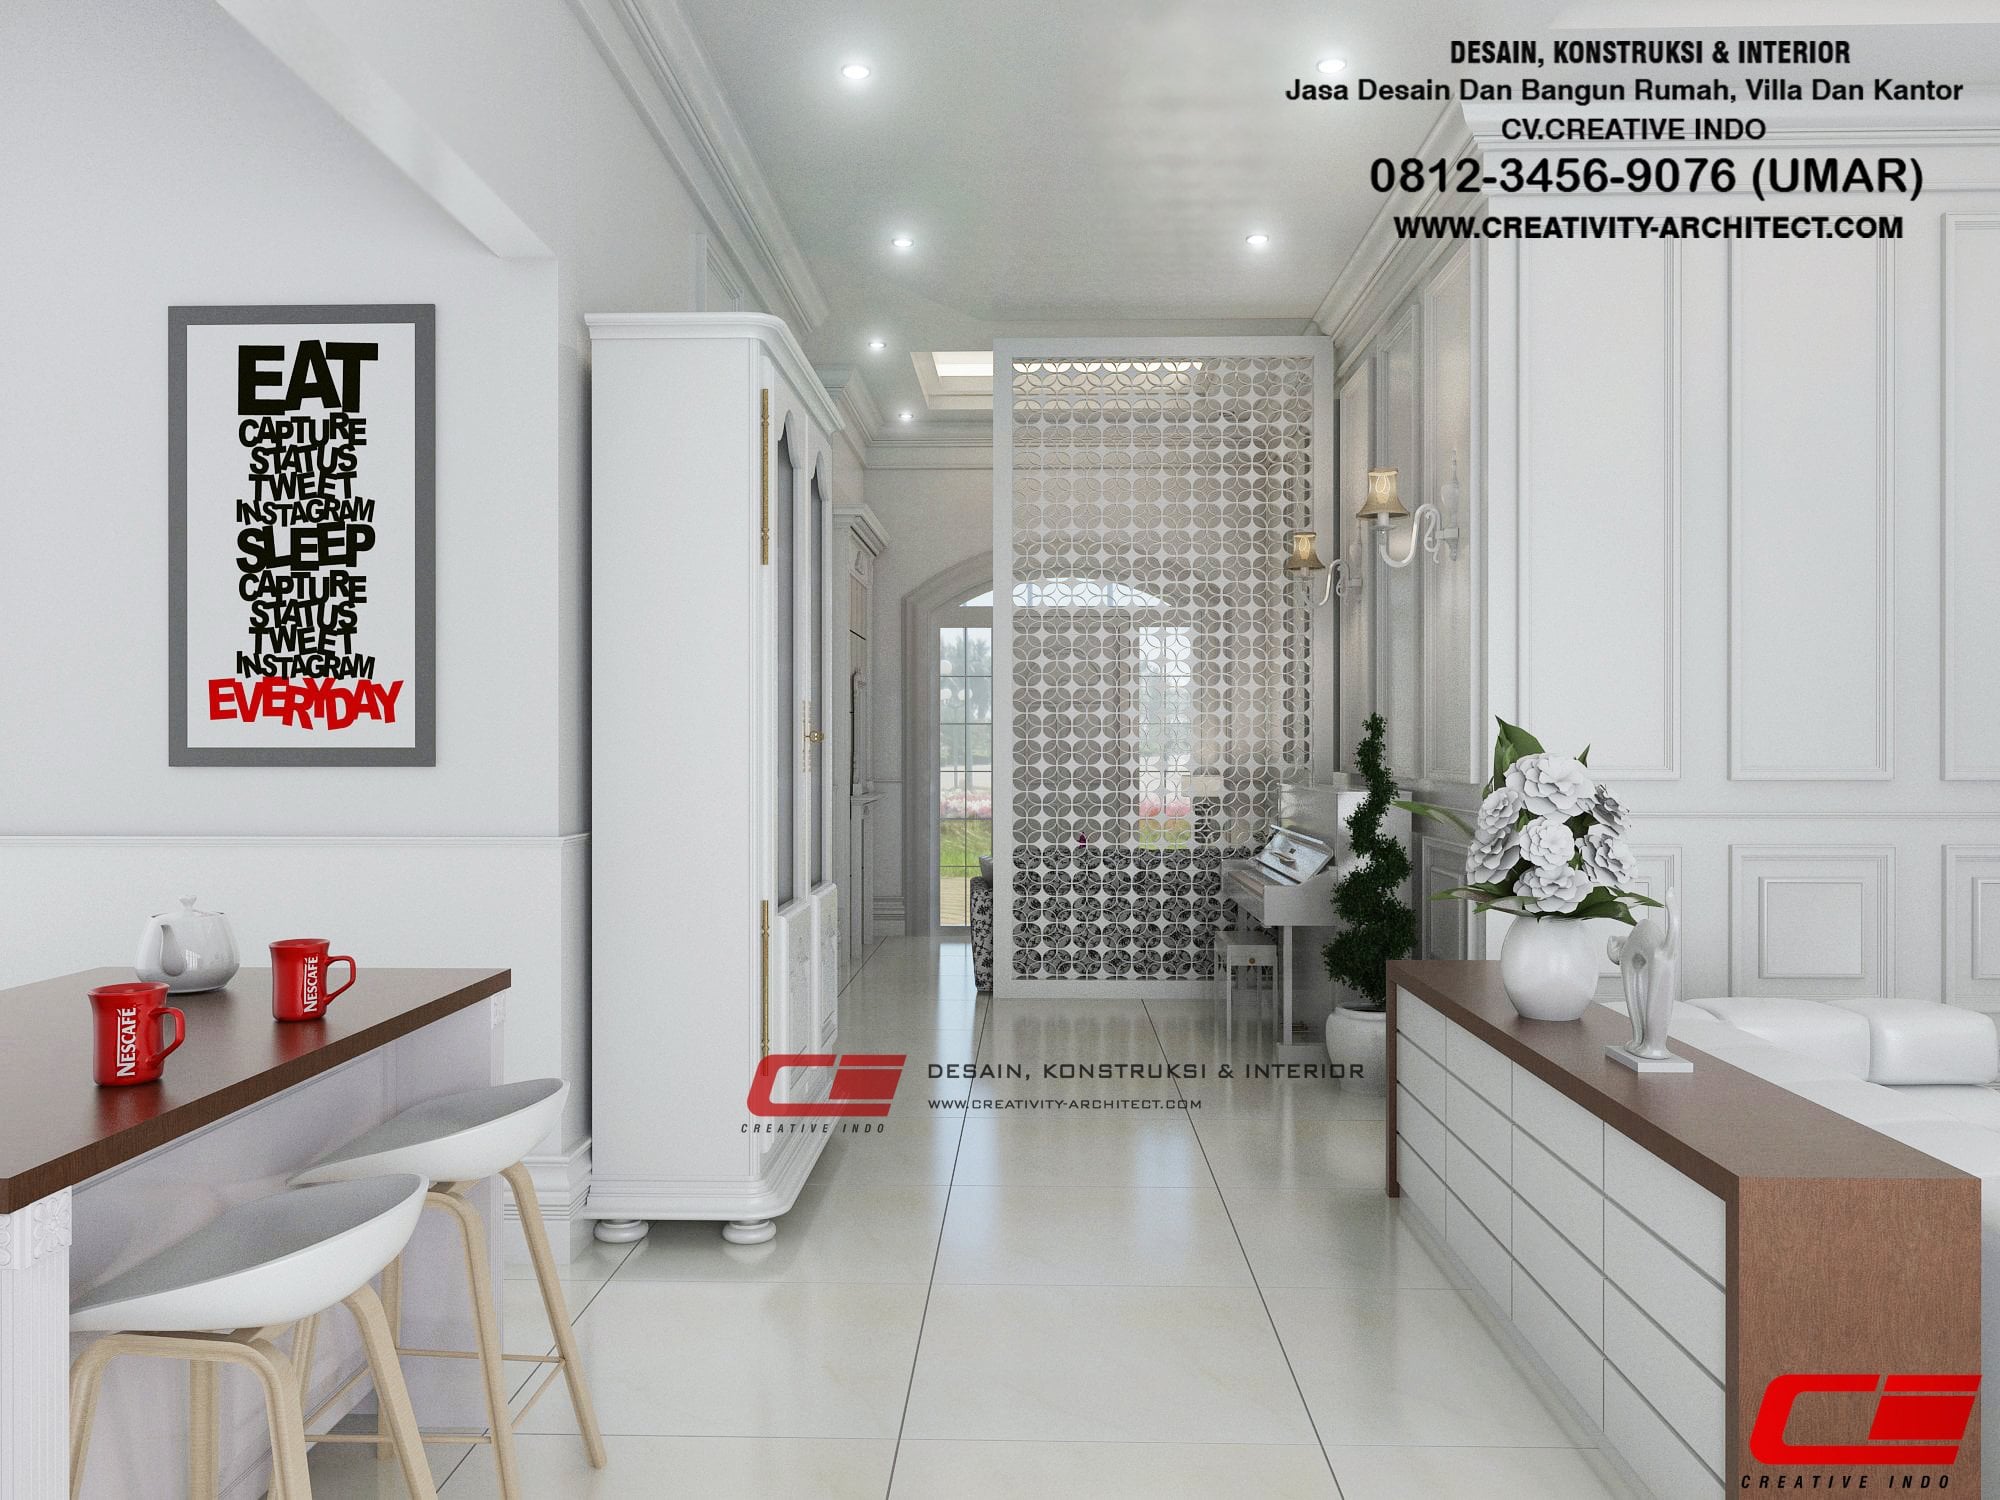 Kreatif Desain Interior Rumah Instagram 18 Dalam Dekorasi Rumah Untuk Gaya Desain Interior oleh Desain Interior Rumah Instagram